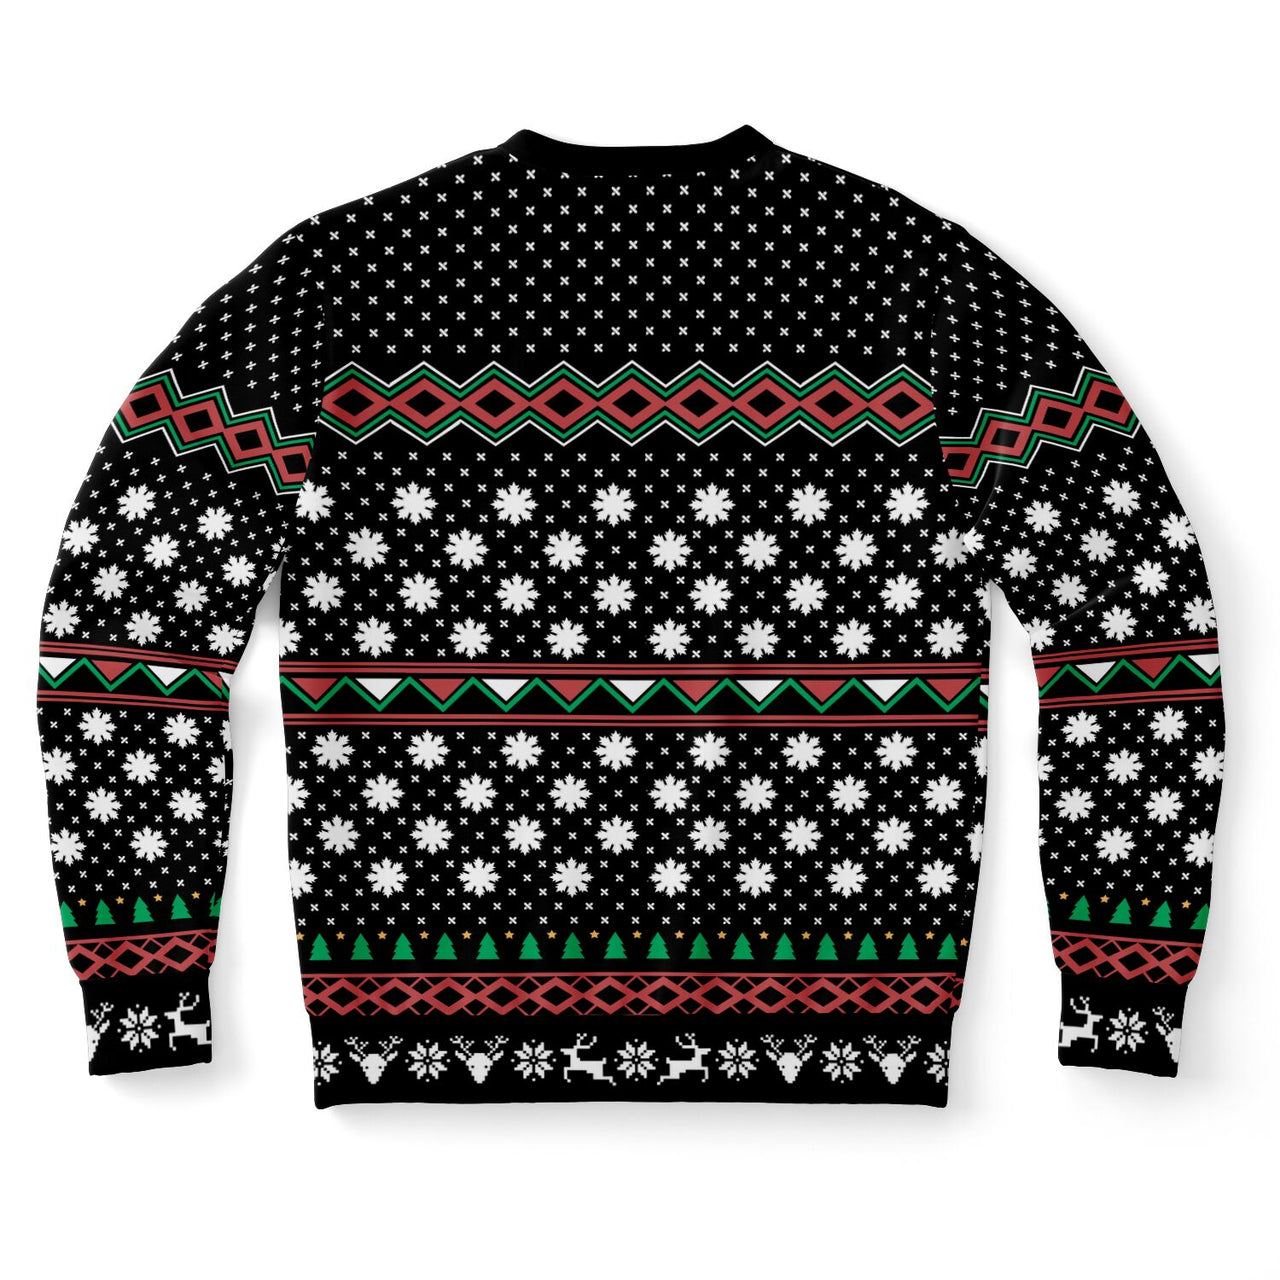 My Gnomies - Ugly Christmas Unisex Sweatshirt